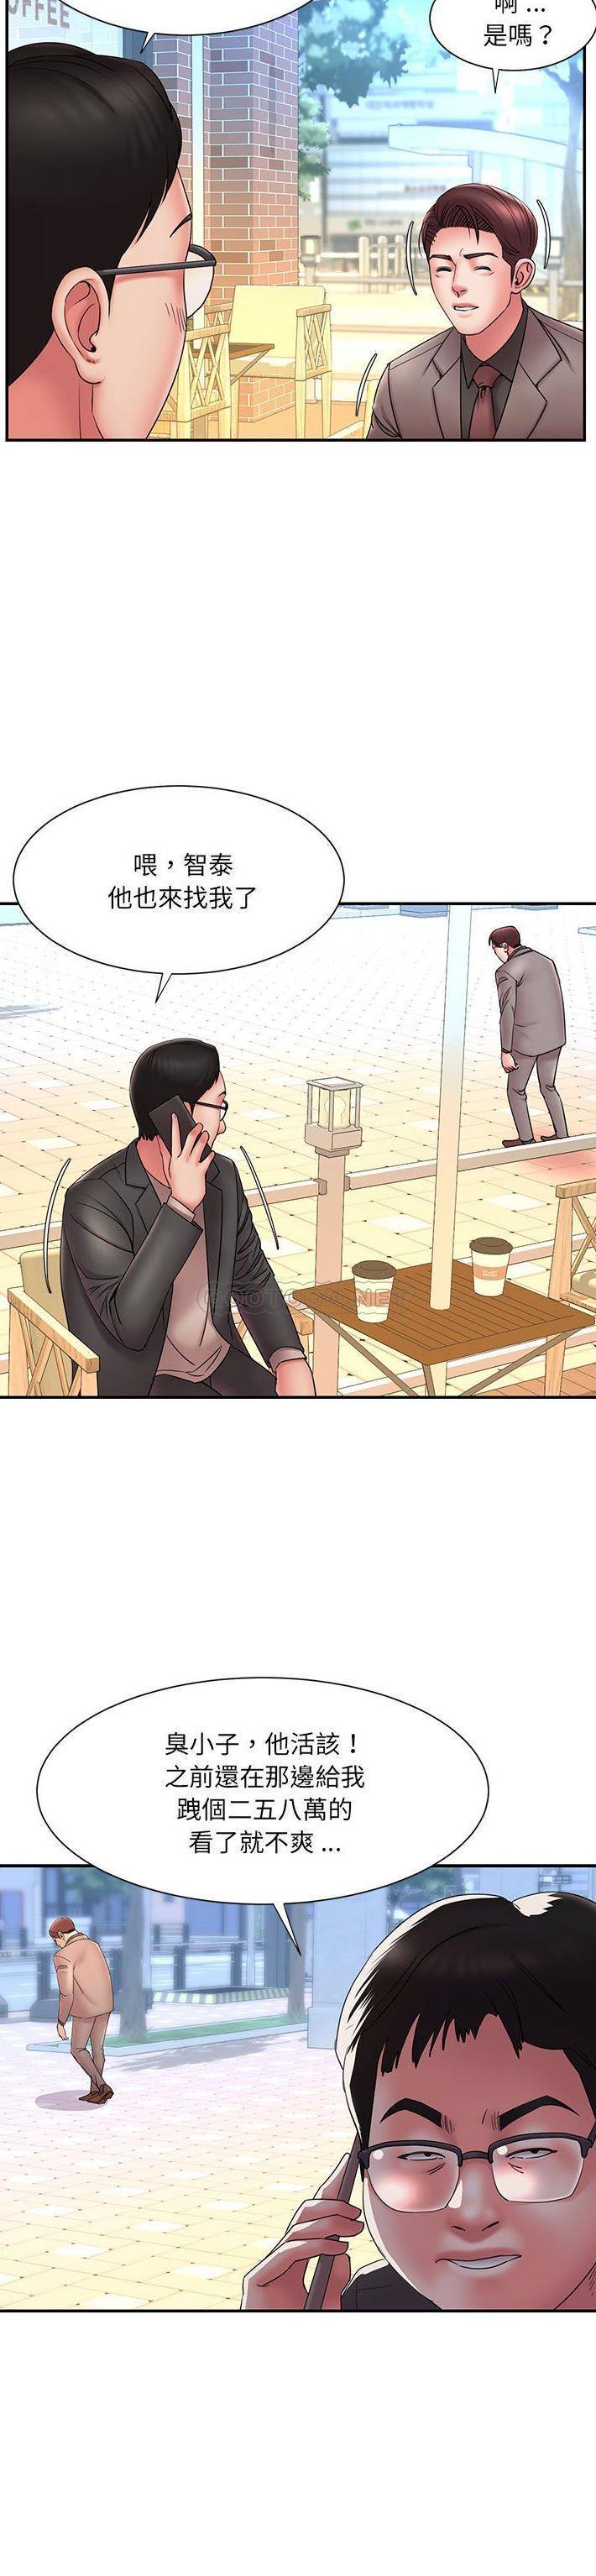 韩国污漫画 被拋棄的男人(男孩沒人愛) 第17话 20